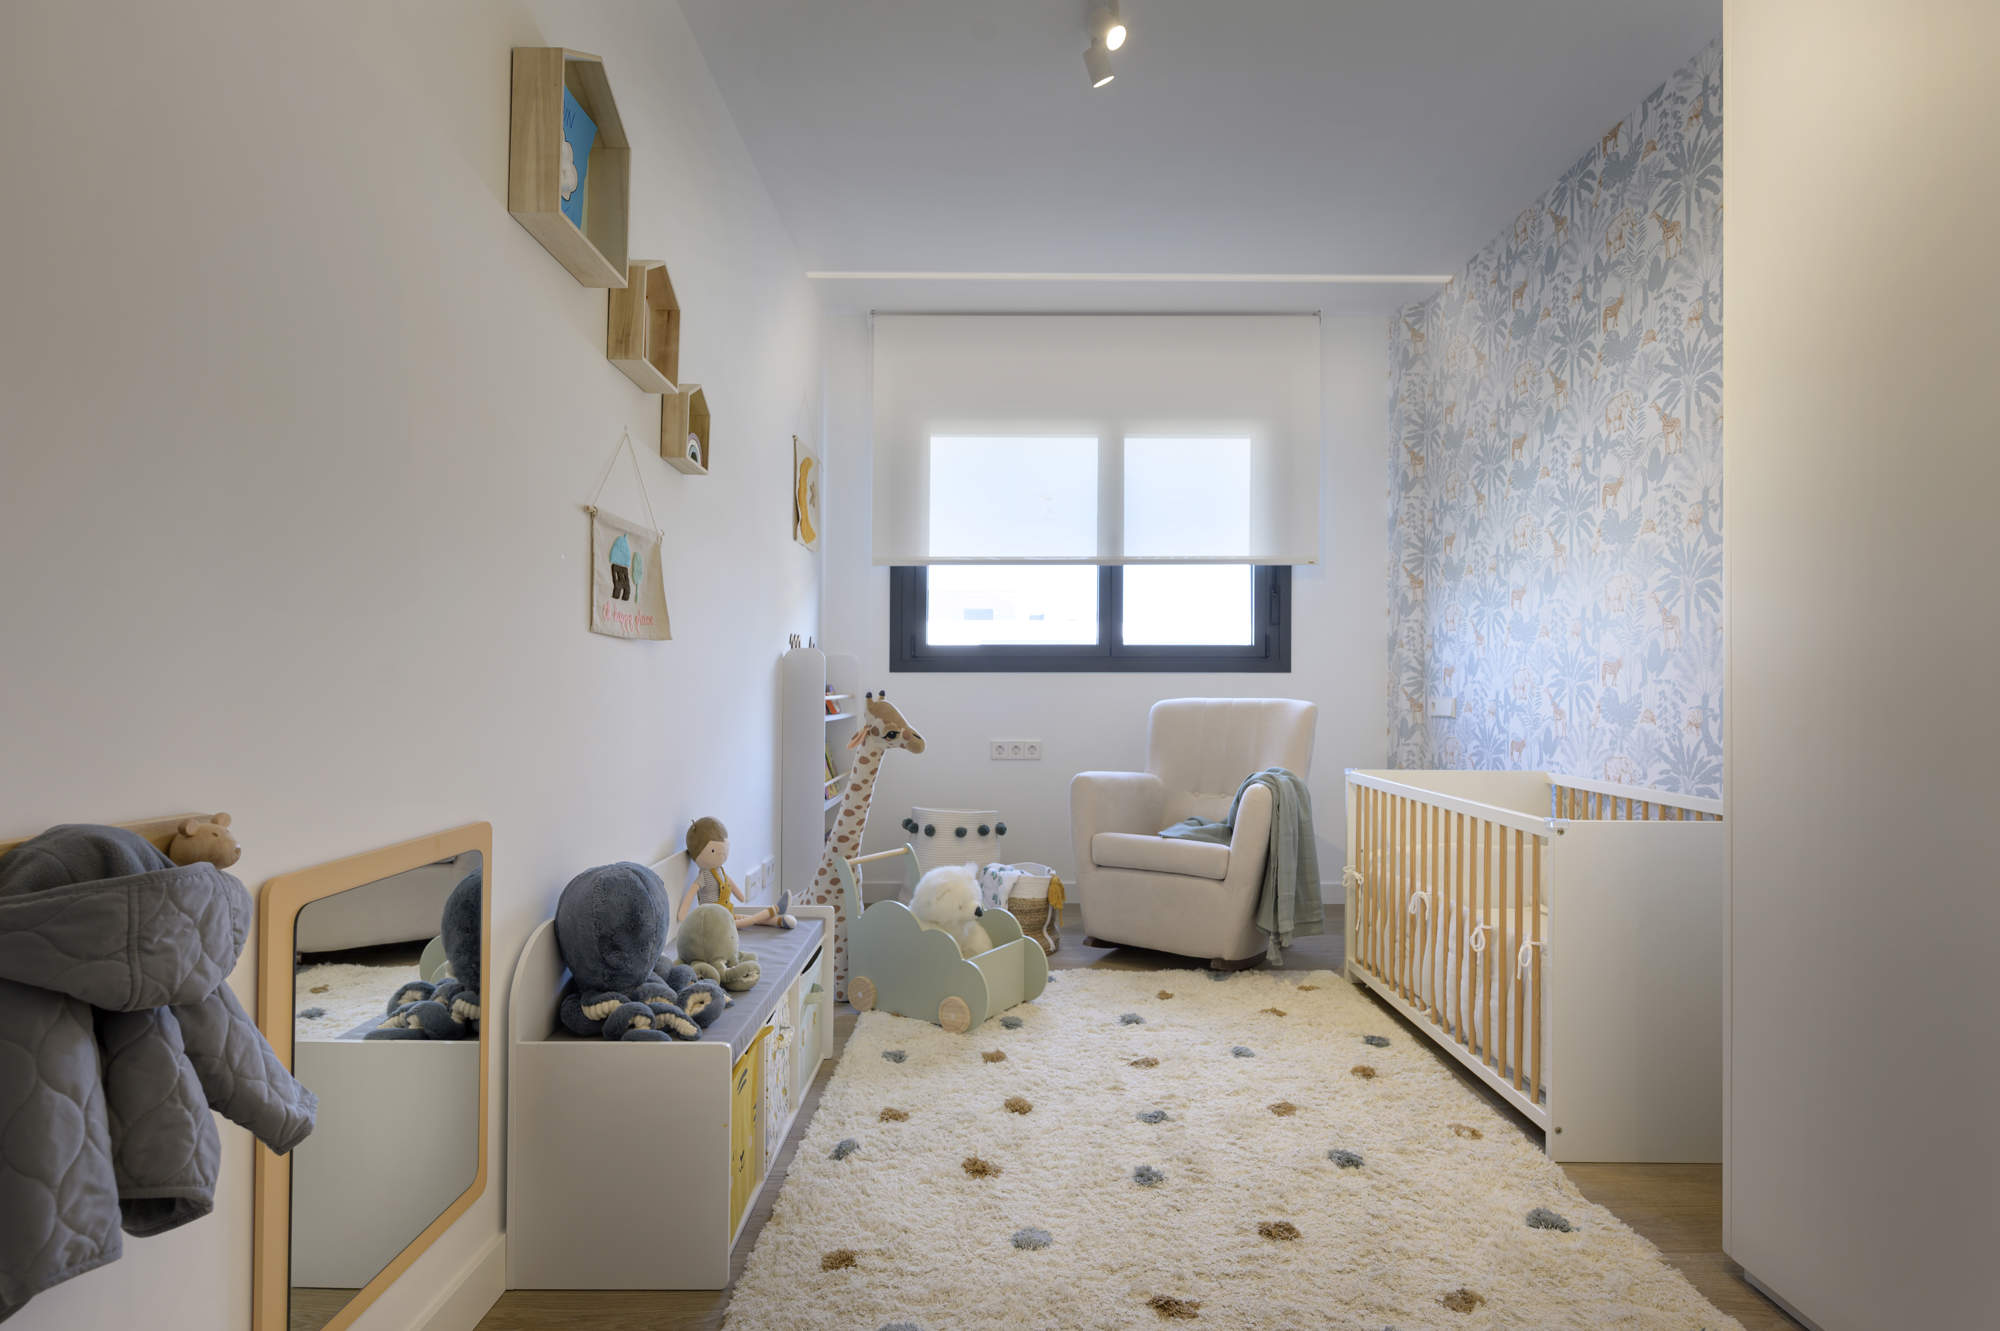 Dormitorio del bebé con alfombra de topos, papel pintado, cuna de madera, butaca gris y muebles Montessori.